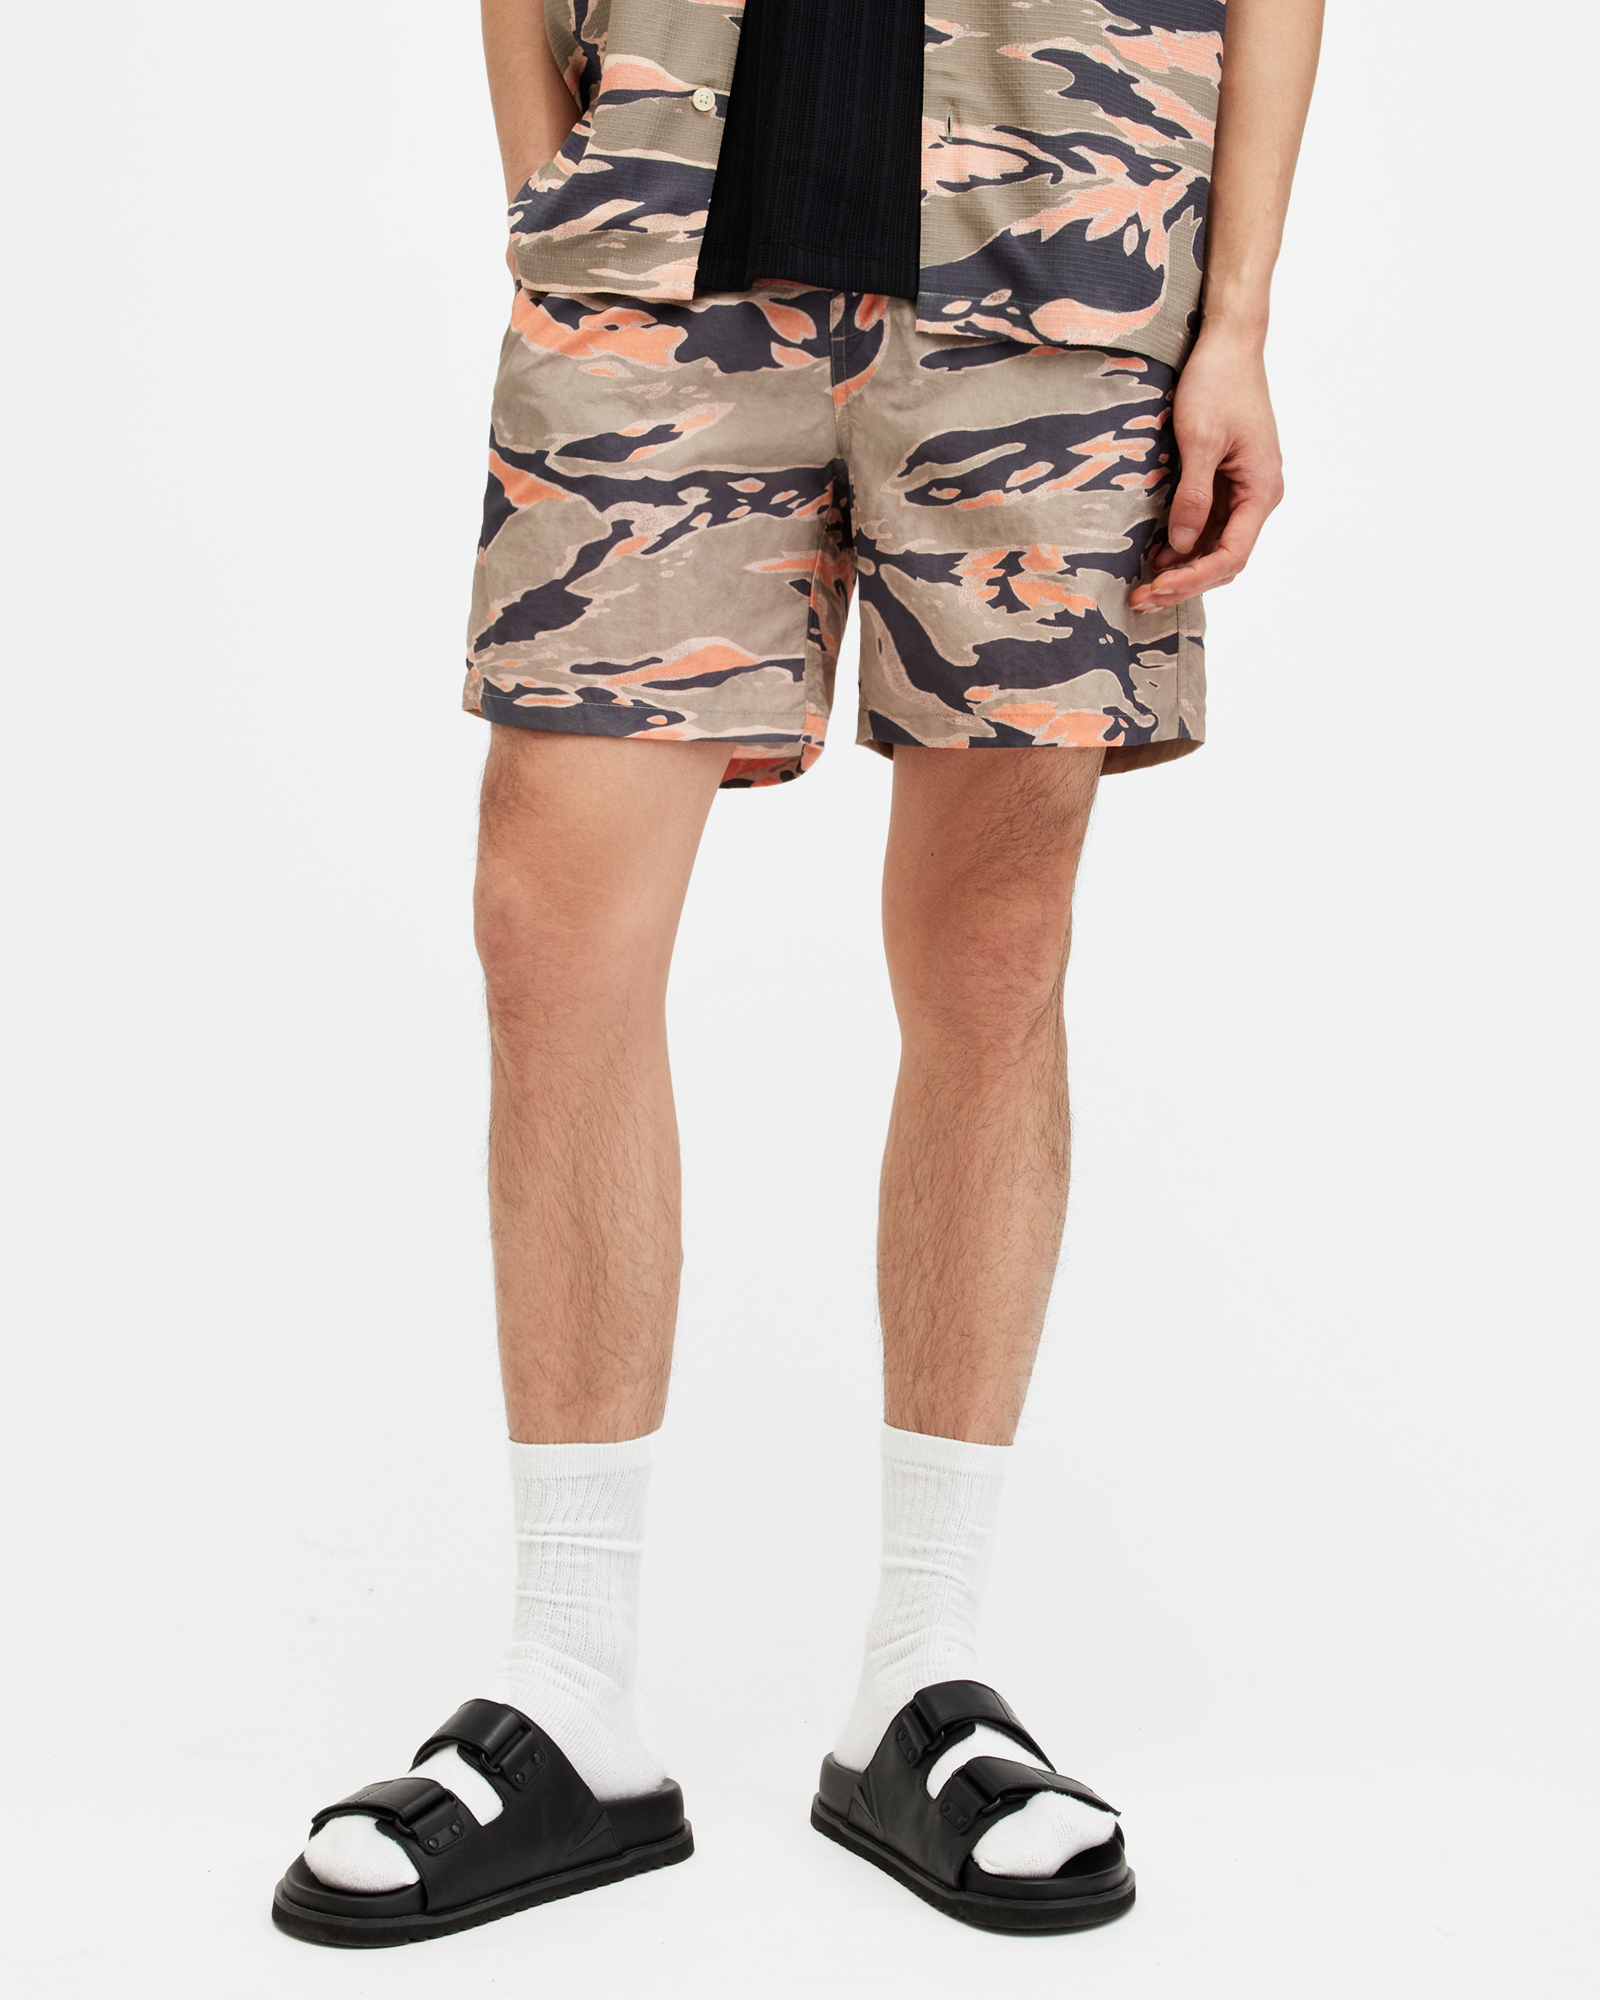 AllSaints Solar Camouflage Print Swim Shorts,, Washed Black, Size: